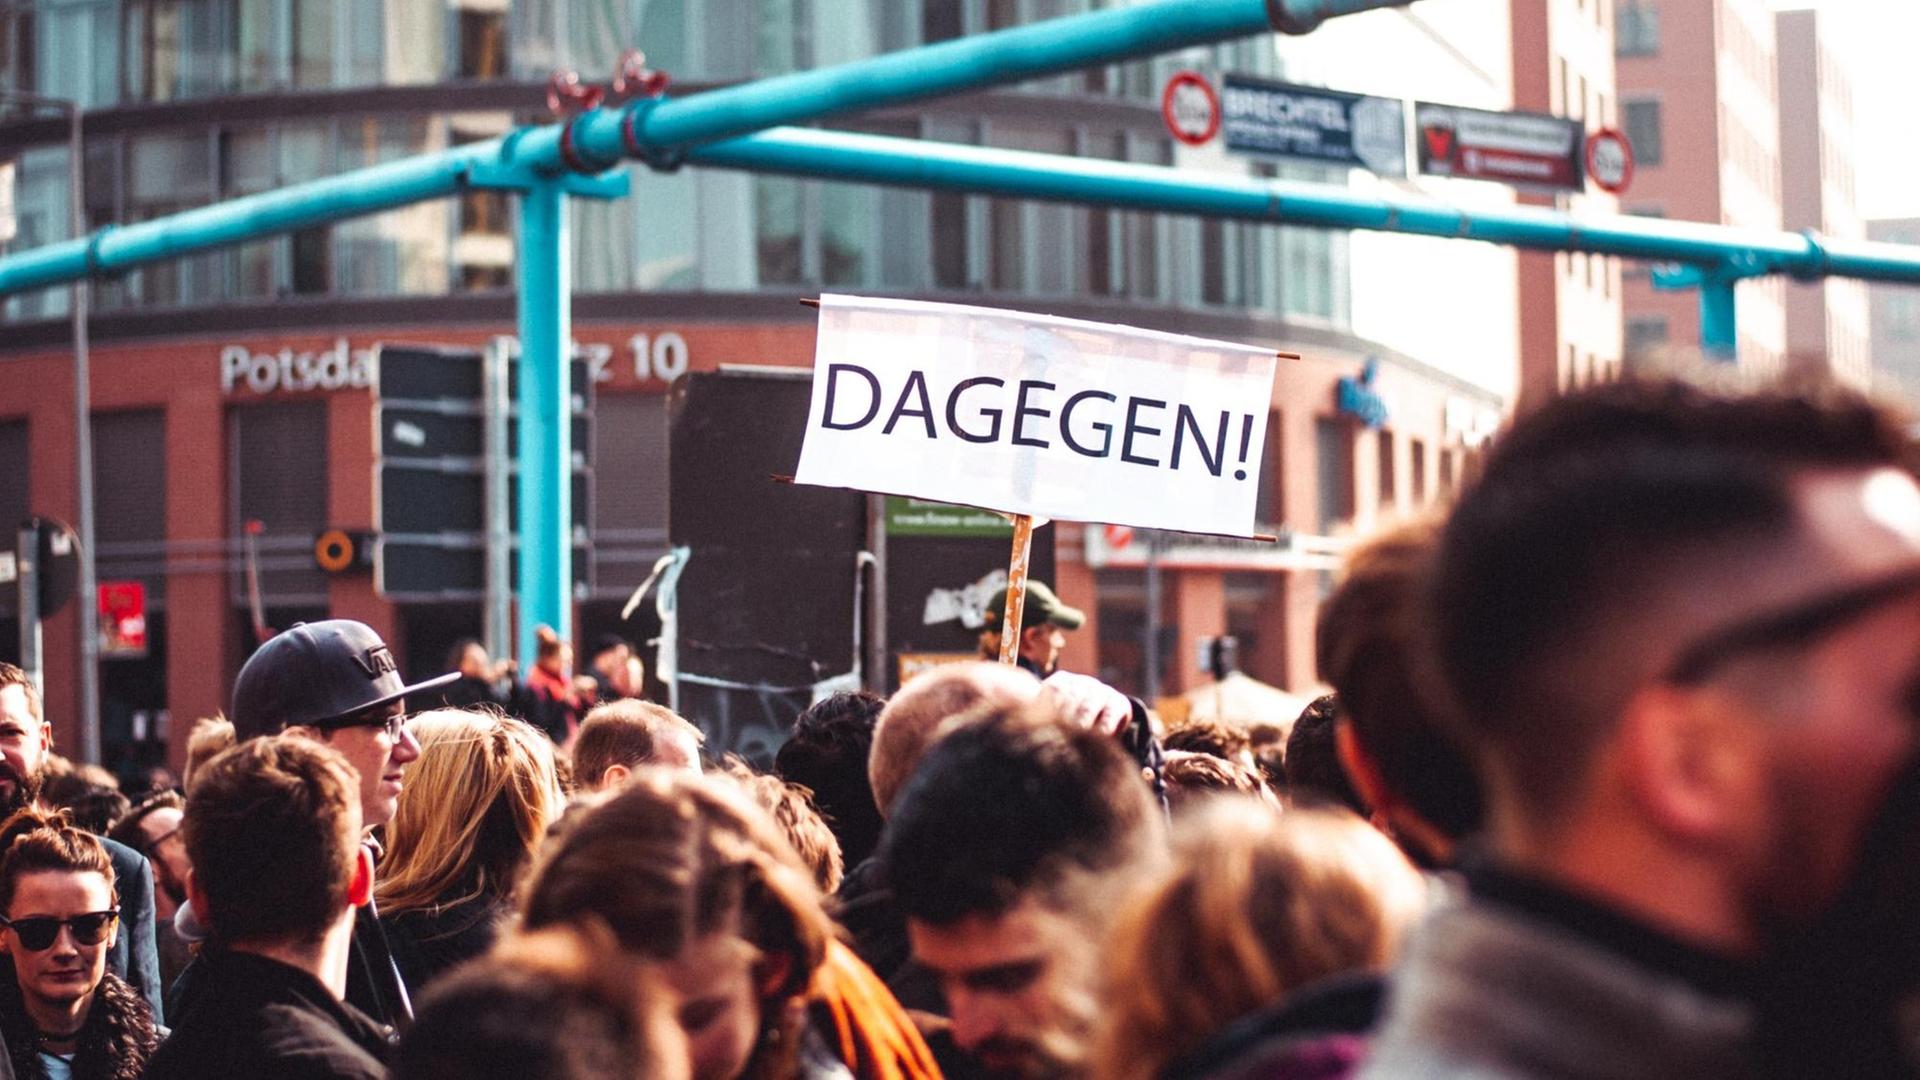 Köpfe einer Menschenmenge am Potsdamer Platz in Berlin. Es handelt sich um eine Demo. Zwischen den Köpfen ragt ein Schild mit der Aufschrift "Dagegen" hervor.